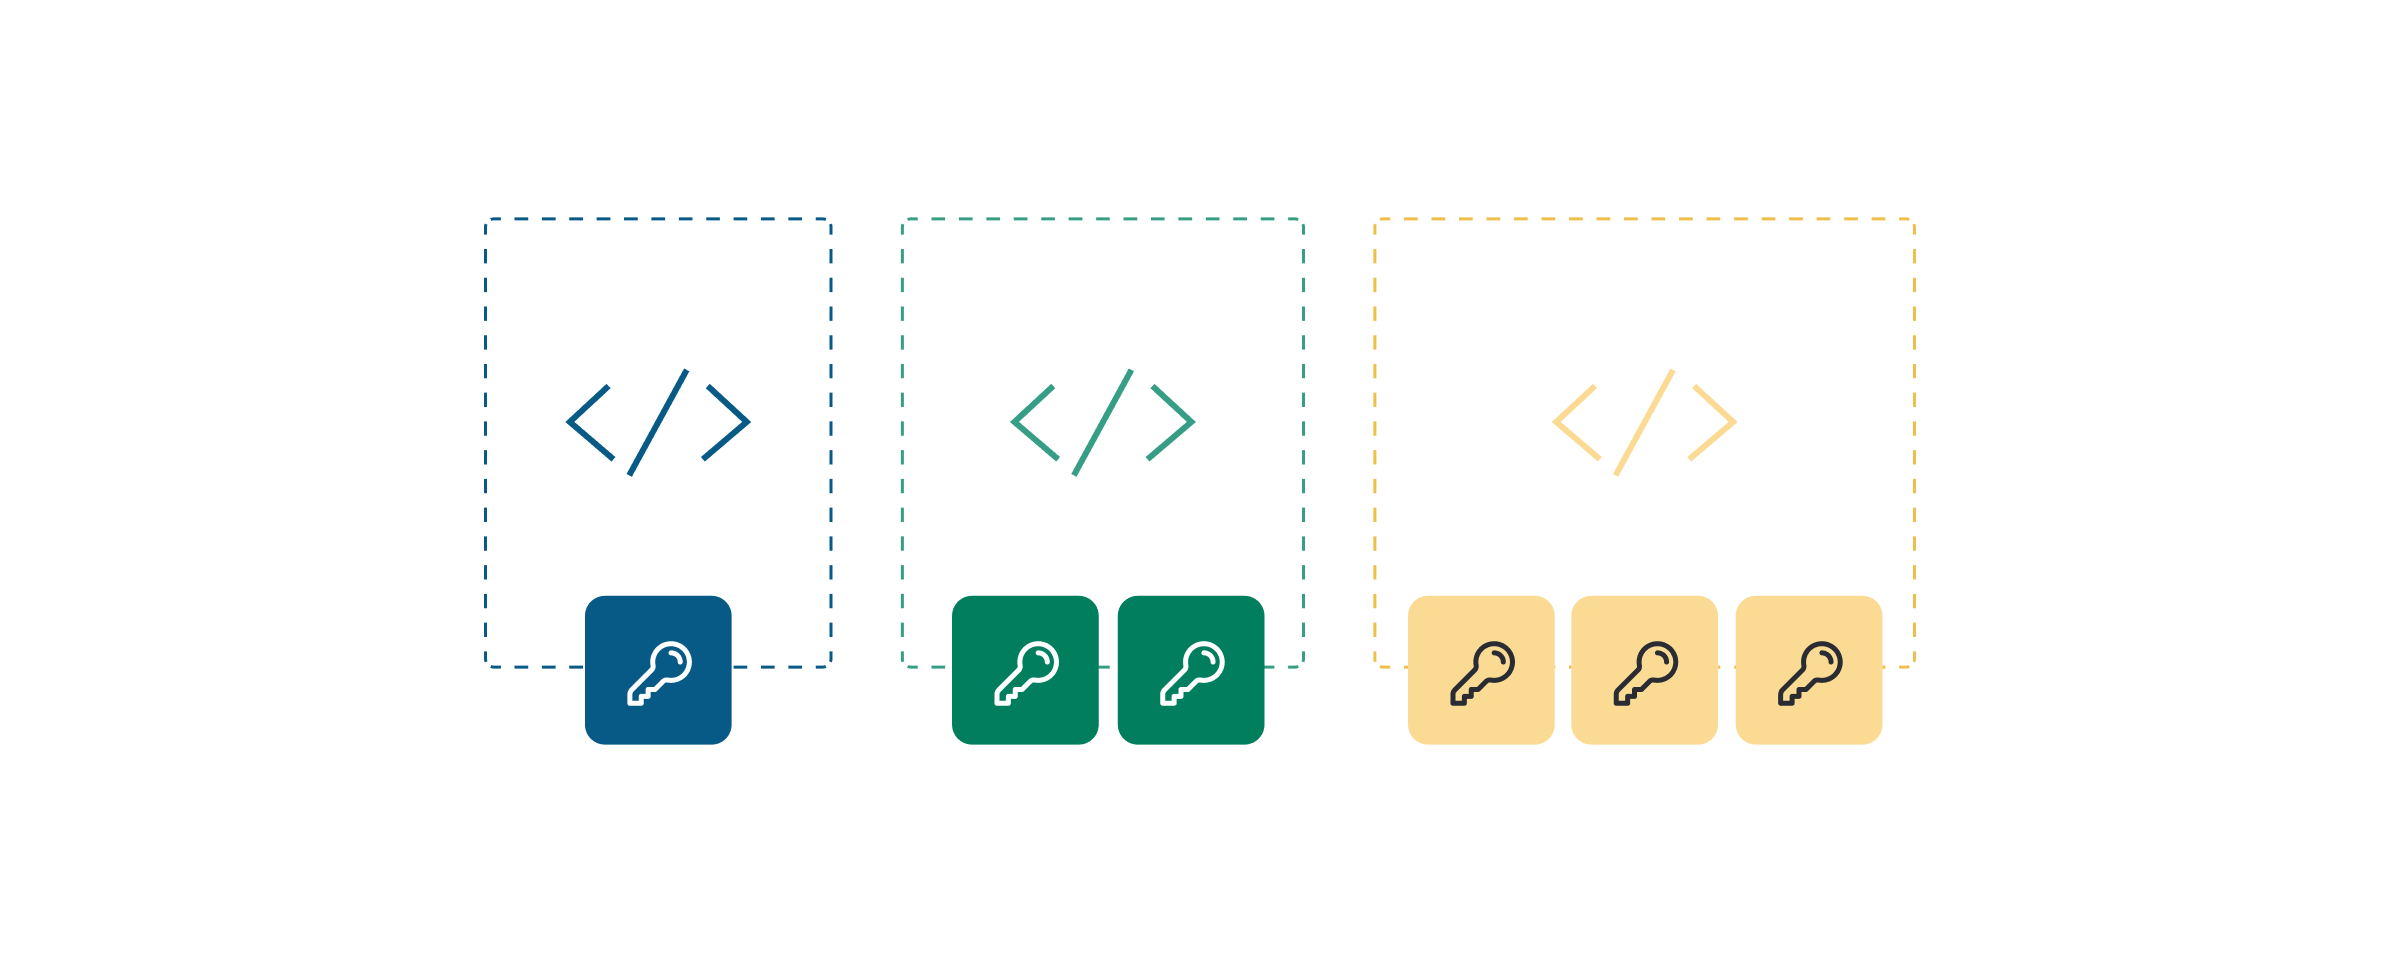 Abbildung von sicheren API‑Keys mit mehreren Nutzungsmöglichkeiten in verschiedenen Farben